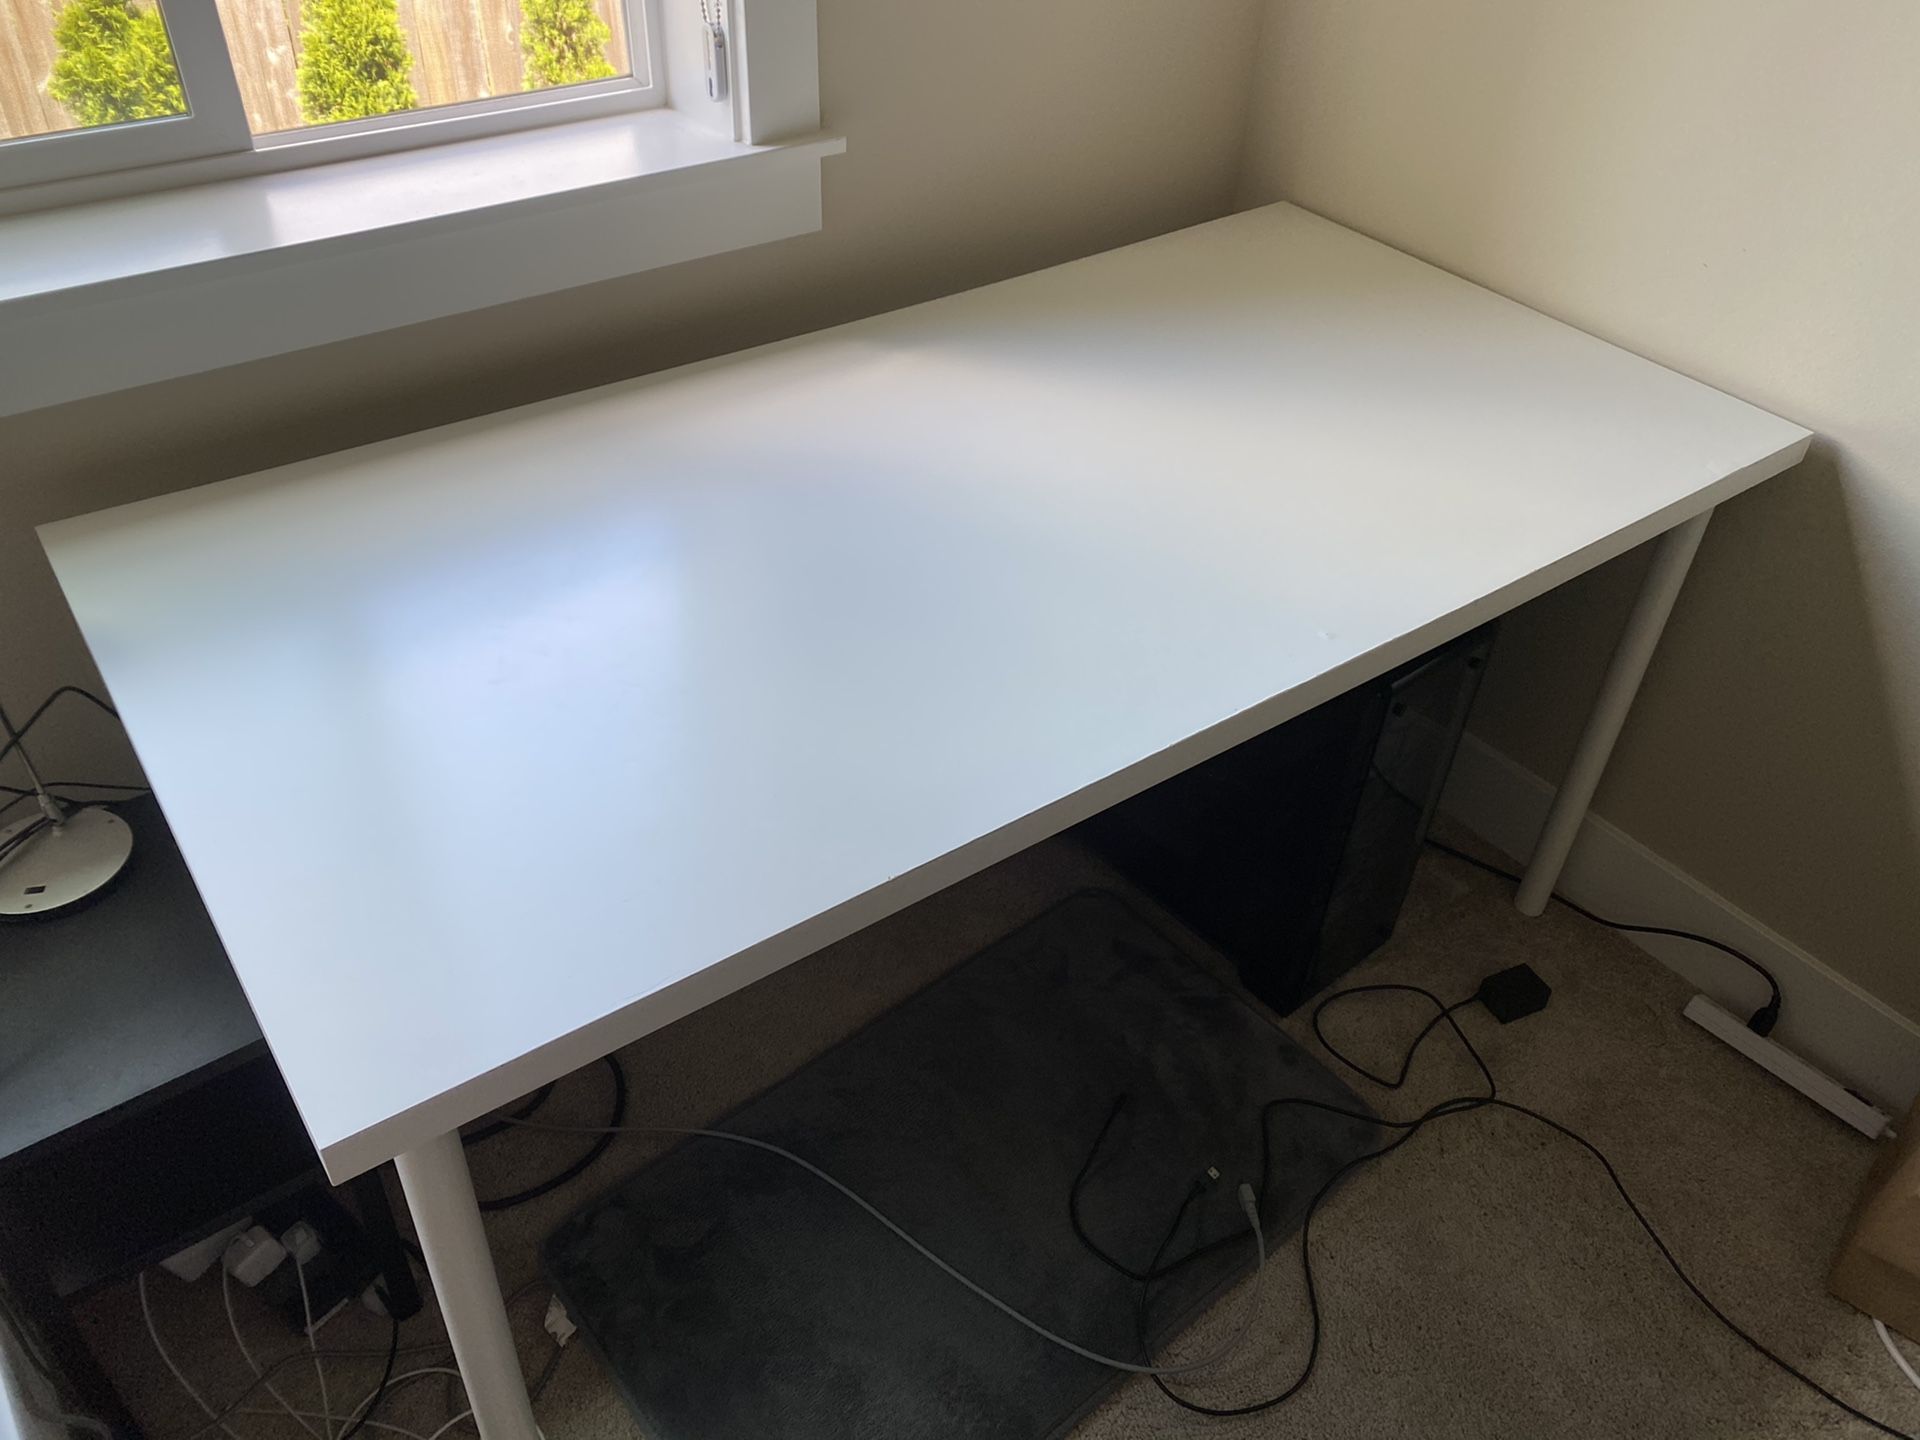 IKEA desk 59” x 29”